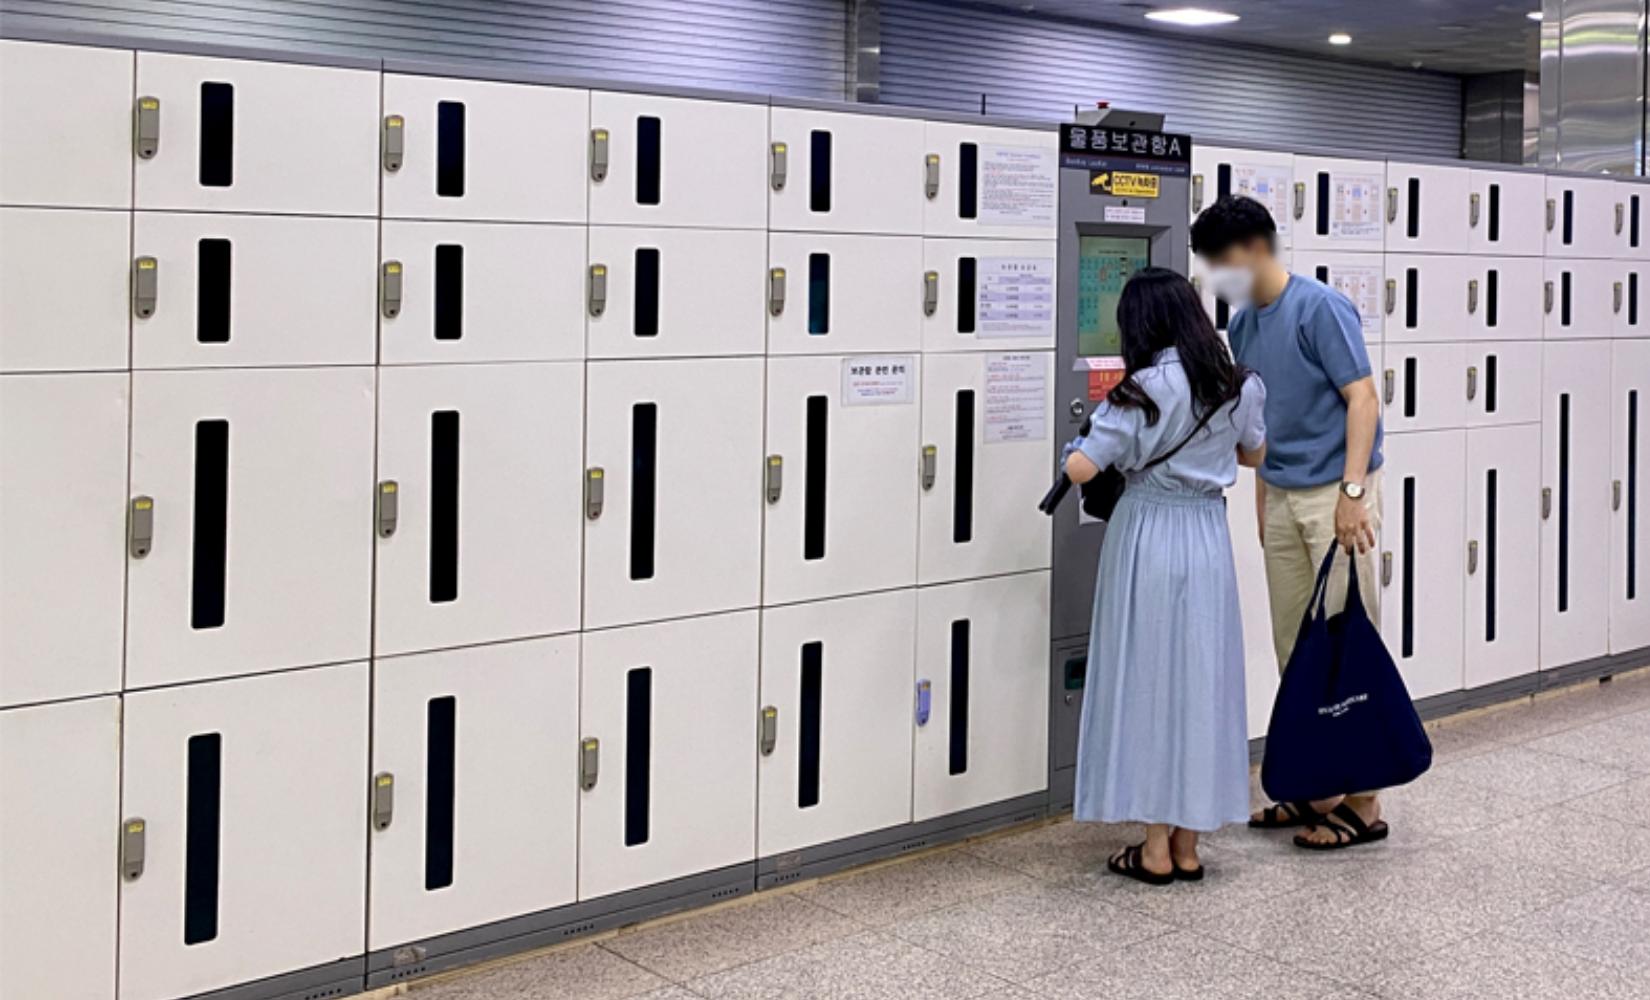 Tổng hợp các điểm có tủ bảo quản hành lý trong các ga tàu điện ngầm ở Busan